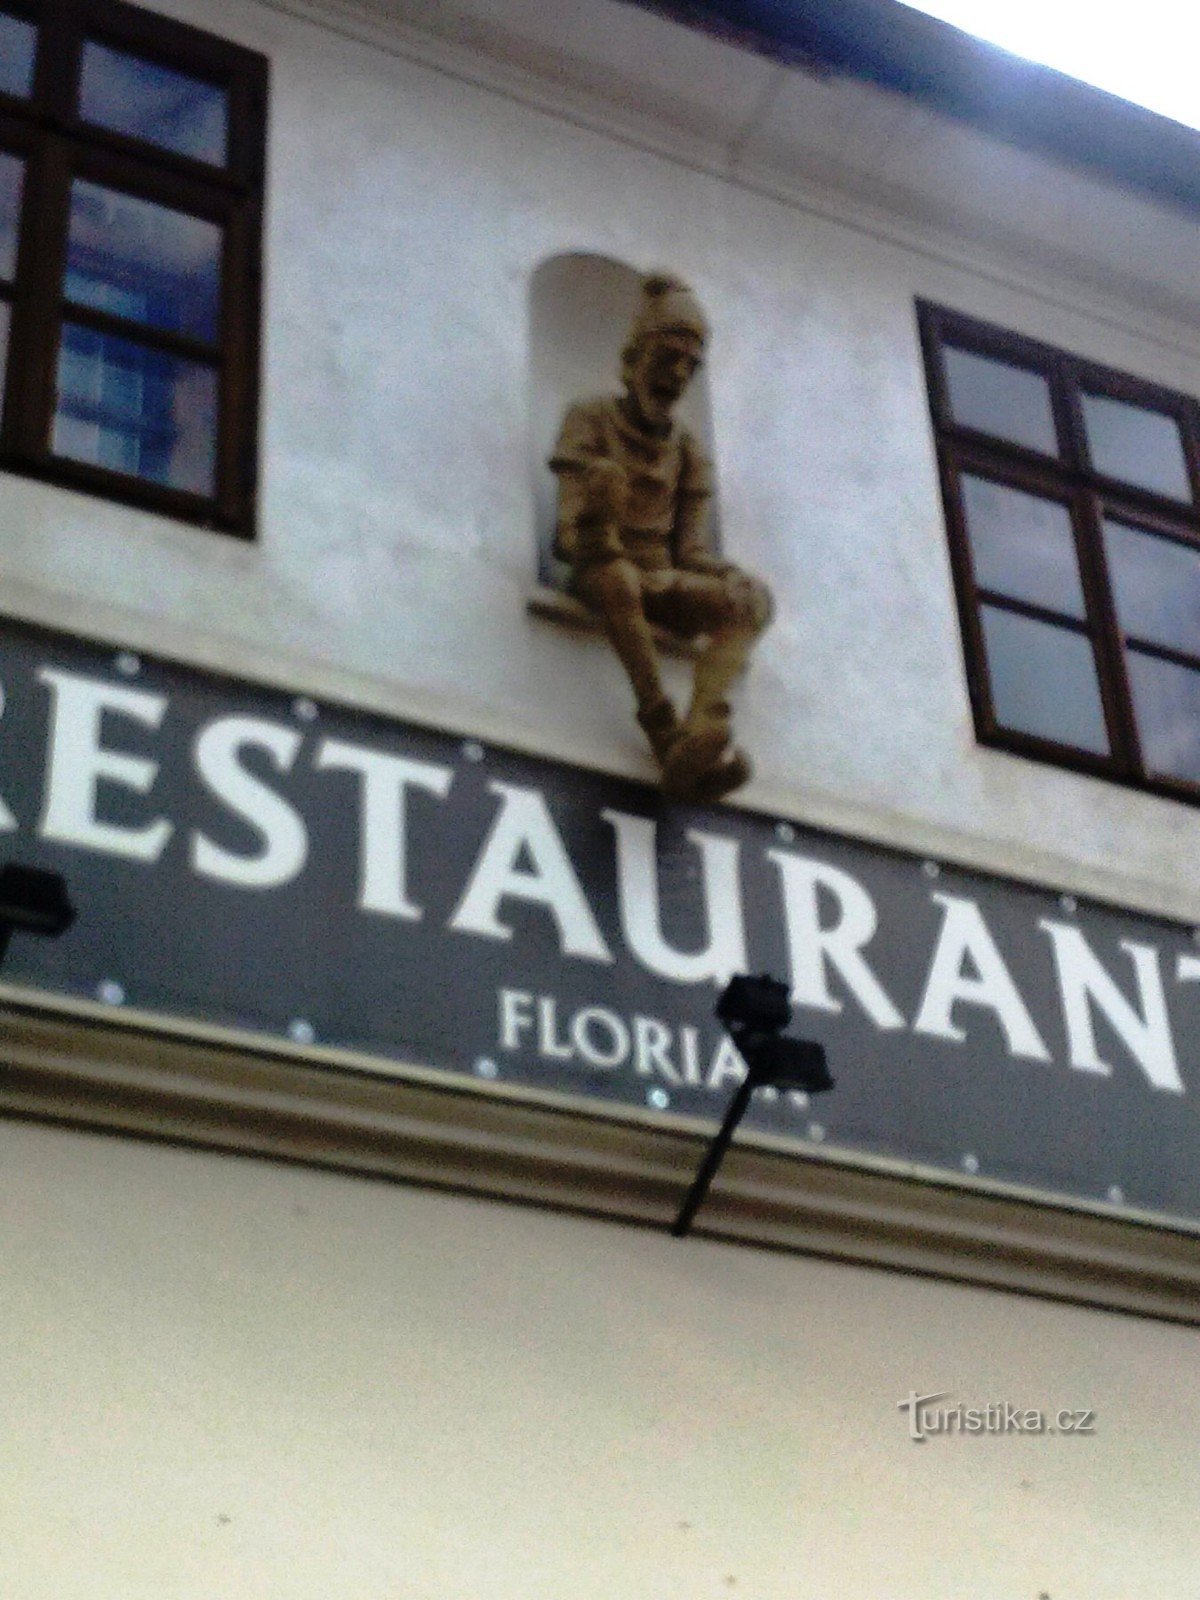 2. レストランの入り口の上にある聖フロリアンの像は、残念ながら私には合いませんでした - Maxík cukn